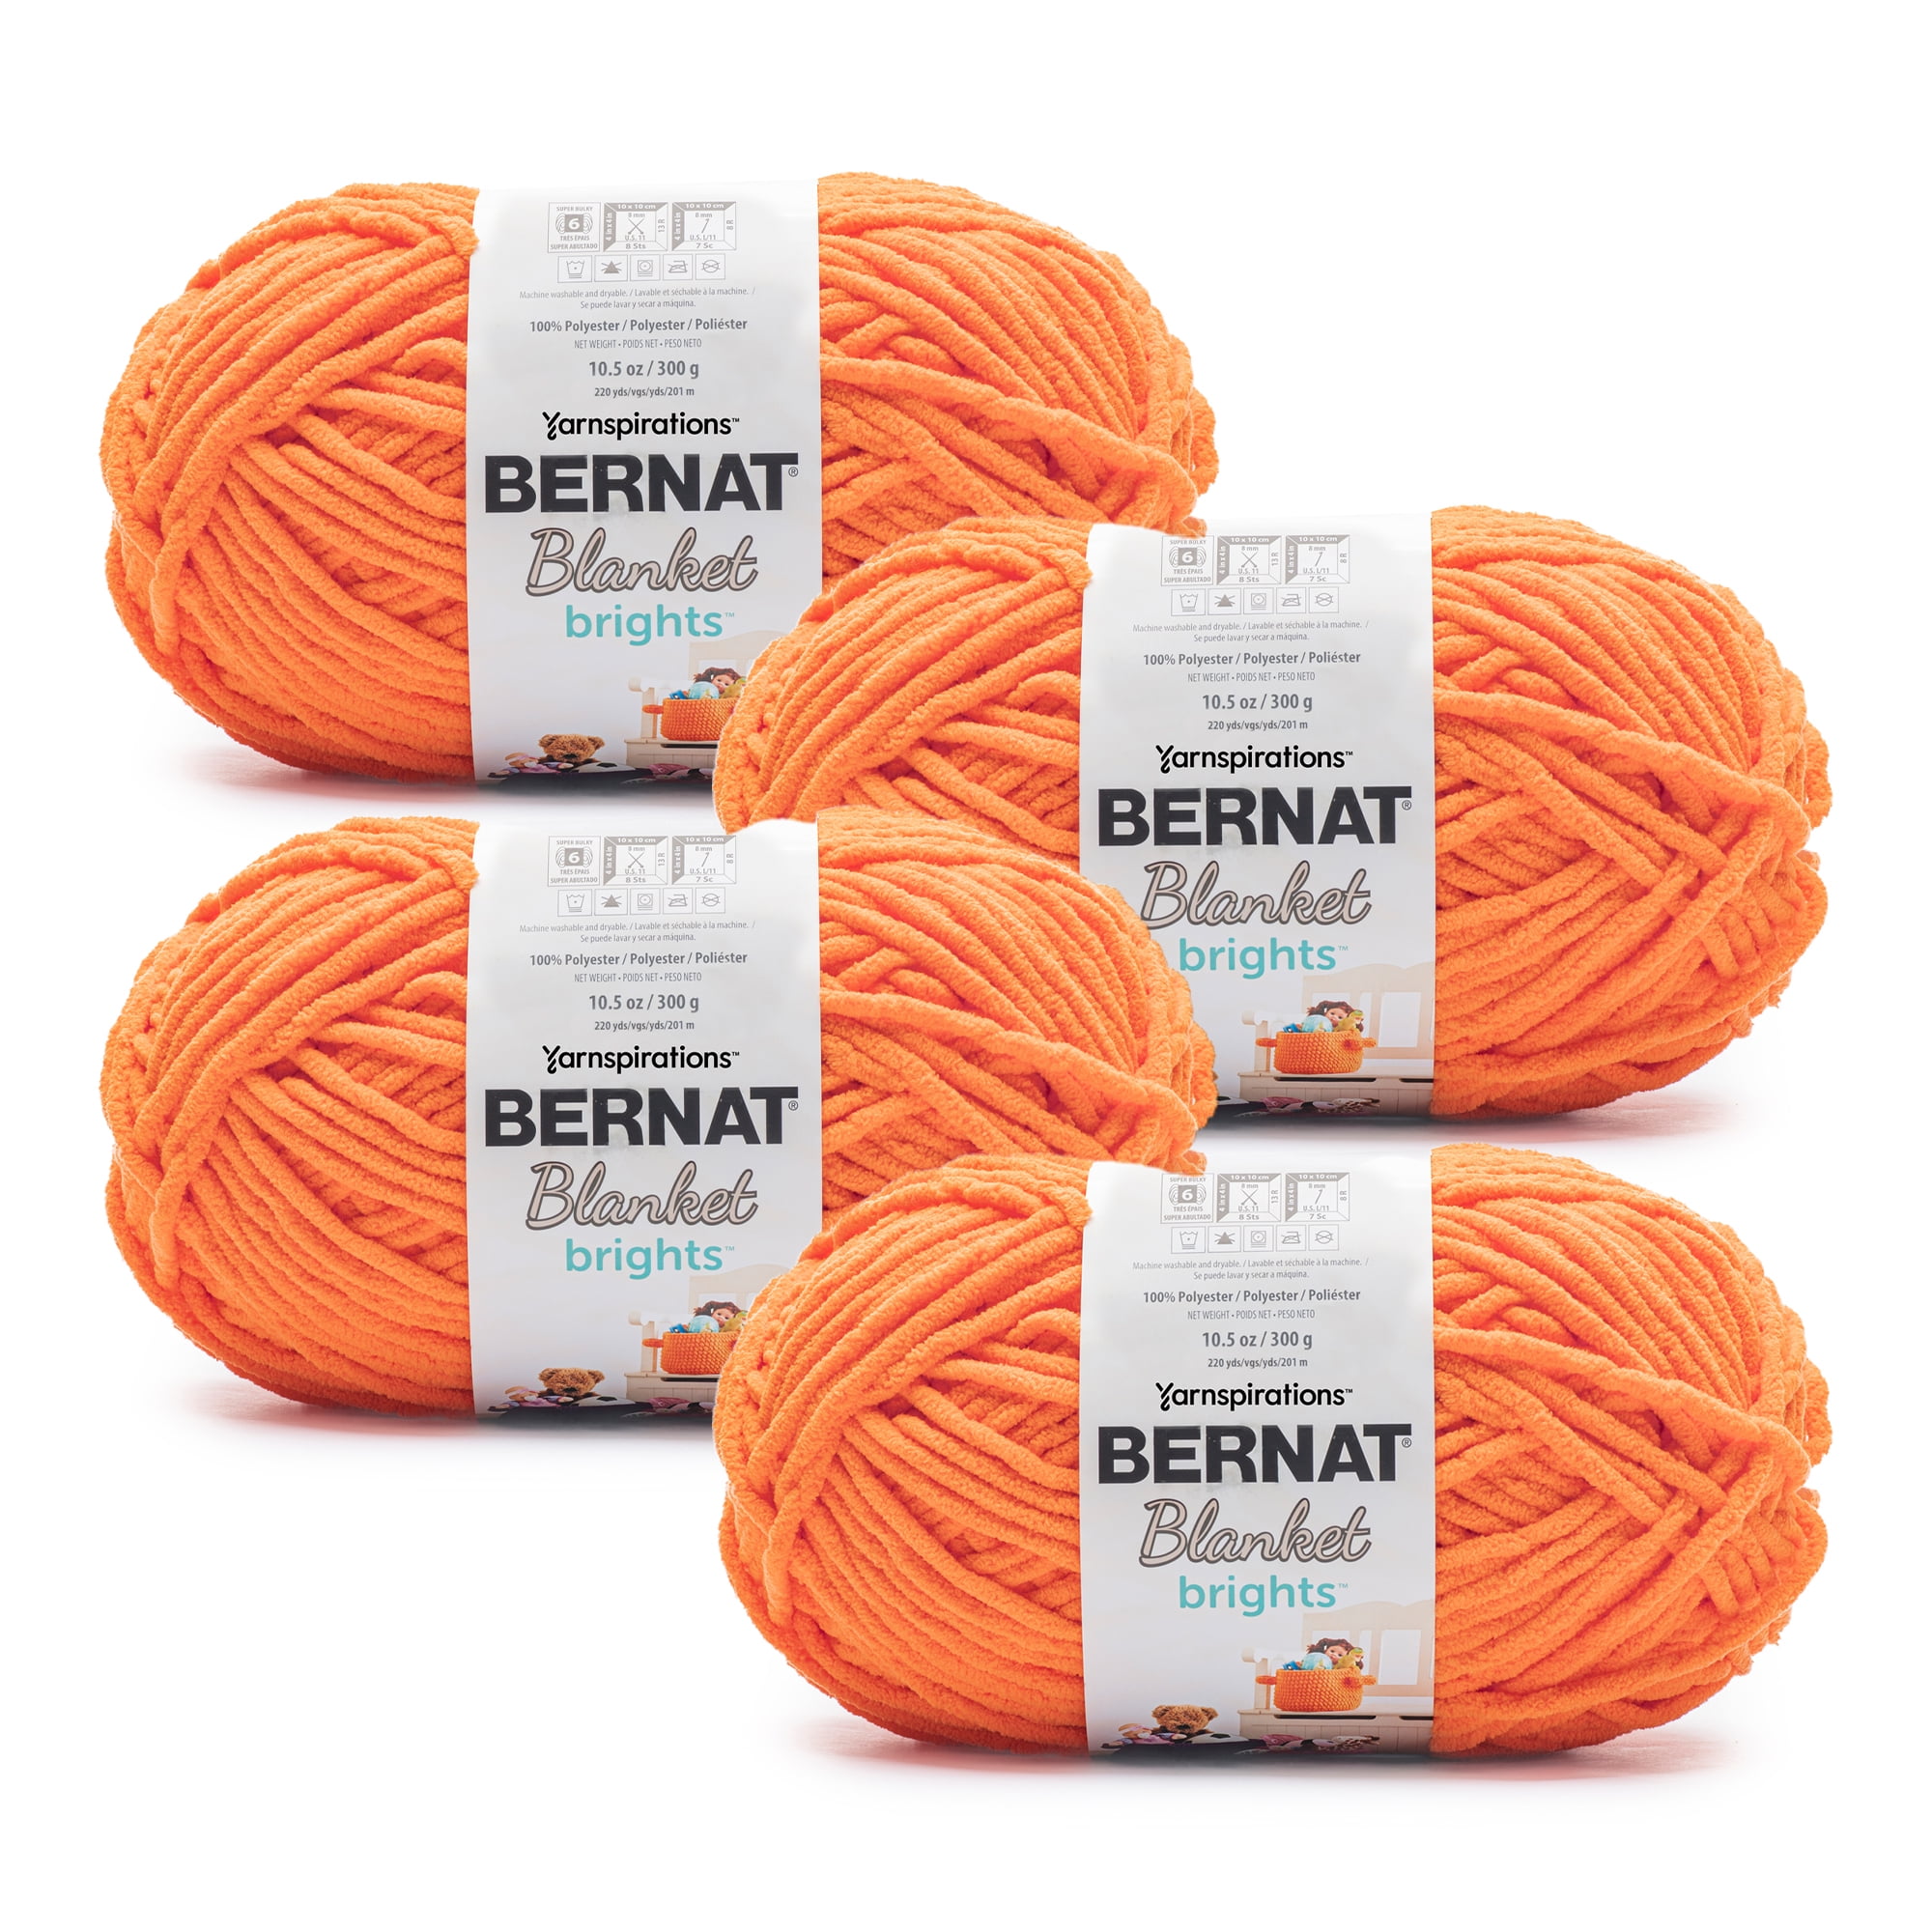 Bernat Blanket Brights Yarn-Carrot Orange, 1 count - King Soopers